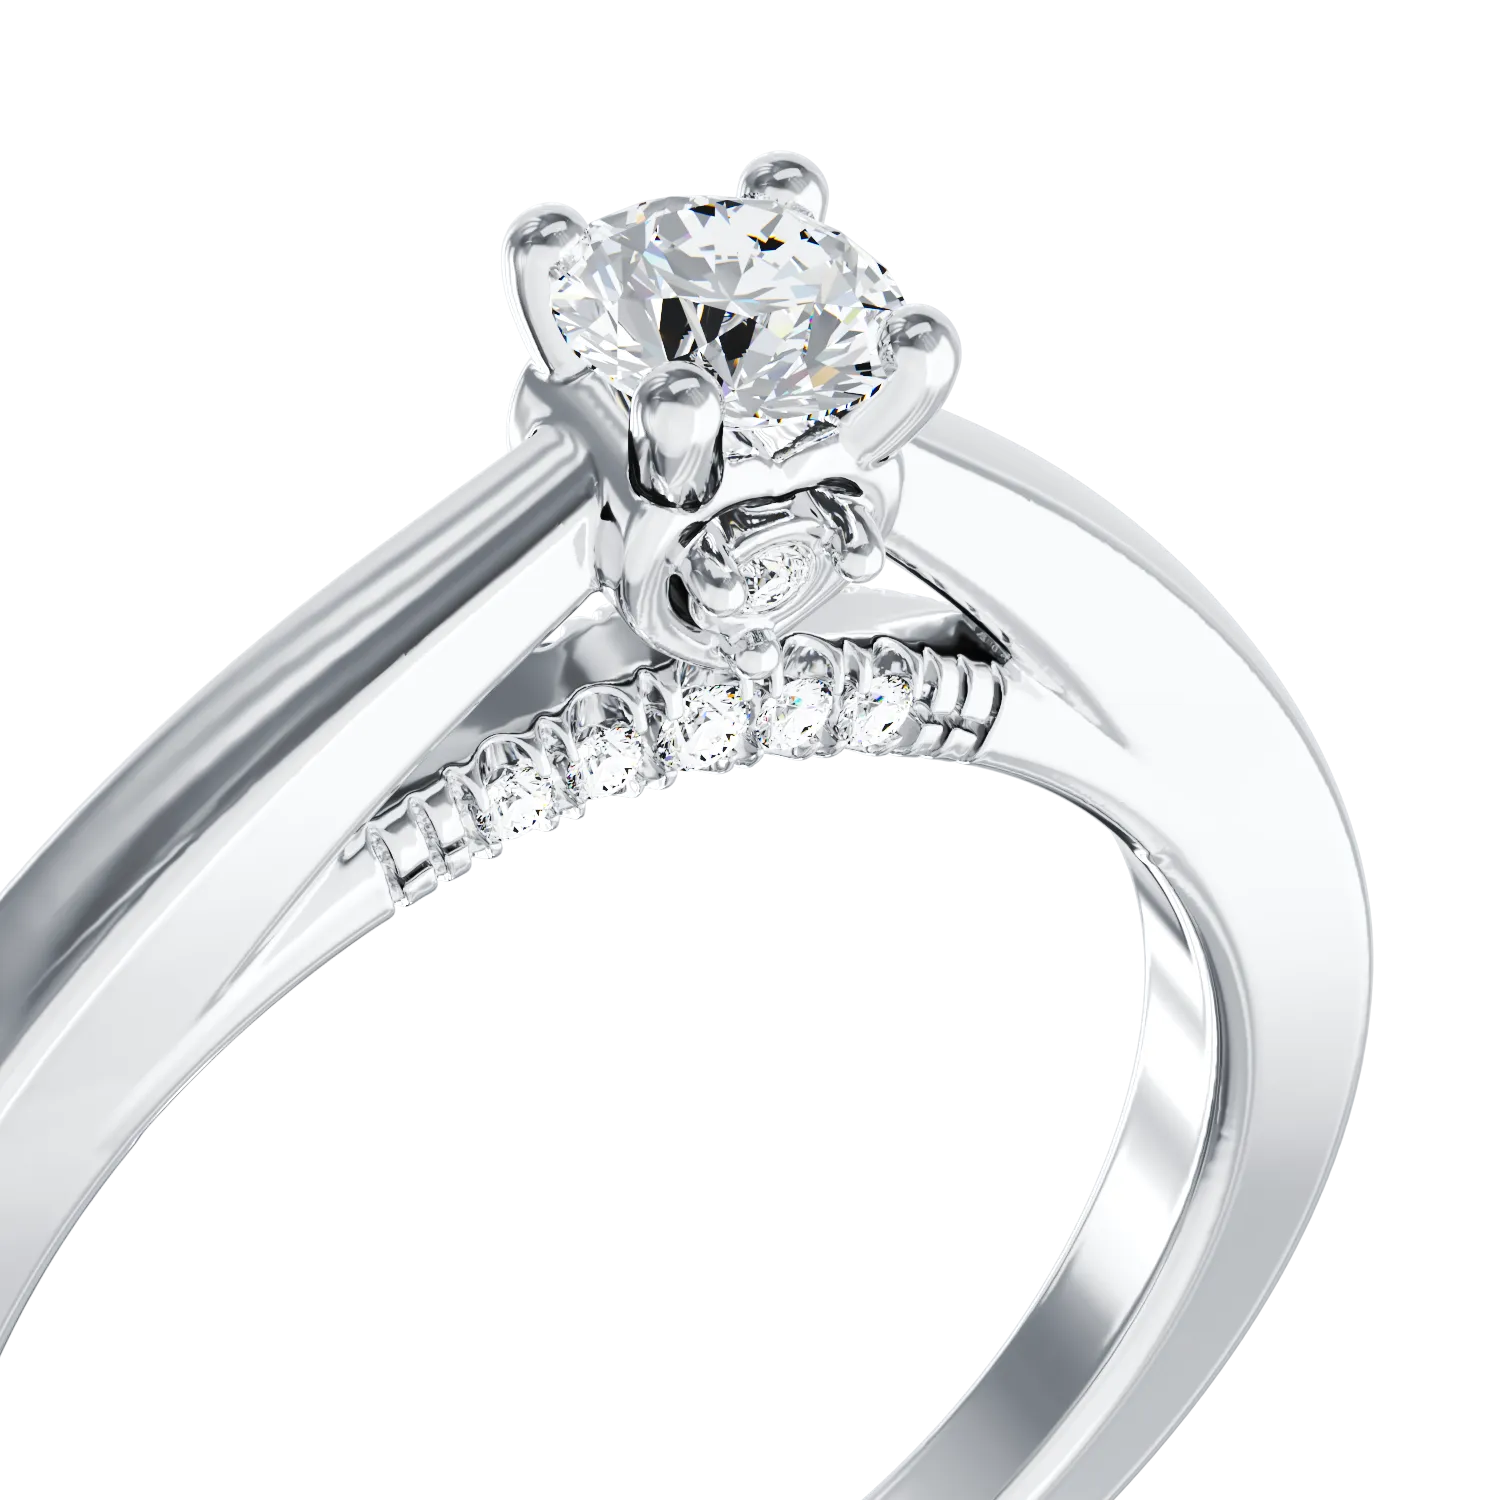 Eljegyzési gyűrű 18K-os fehér aranyból 0,4ct gyémánttal és 0,05ct gyémántokkal. Gramm: 3,15